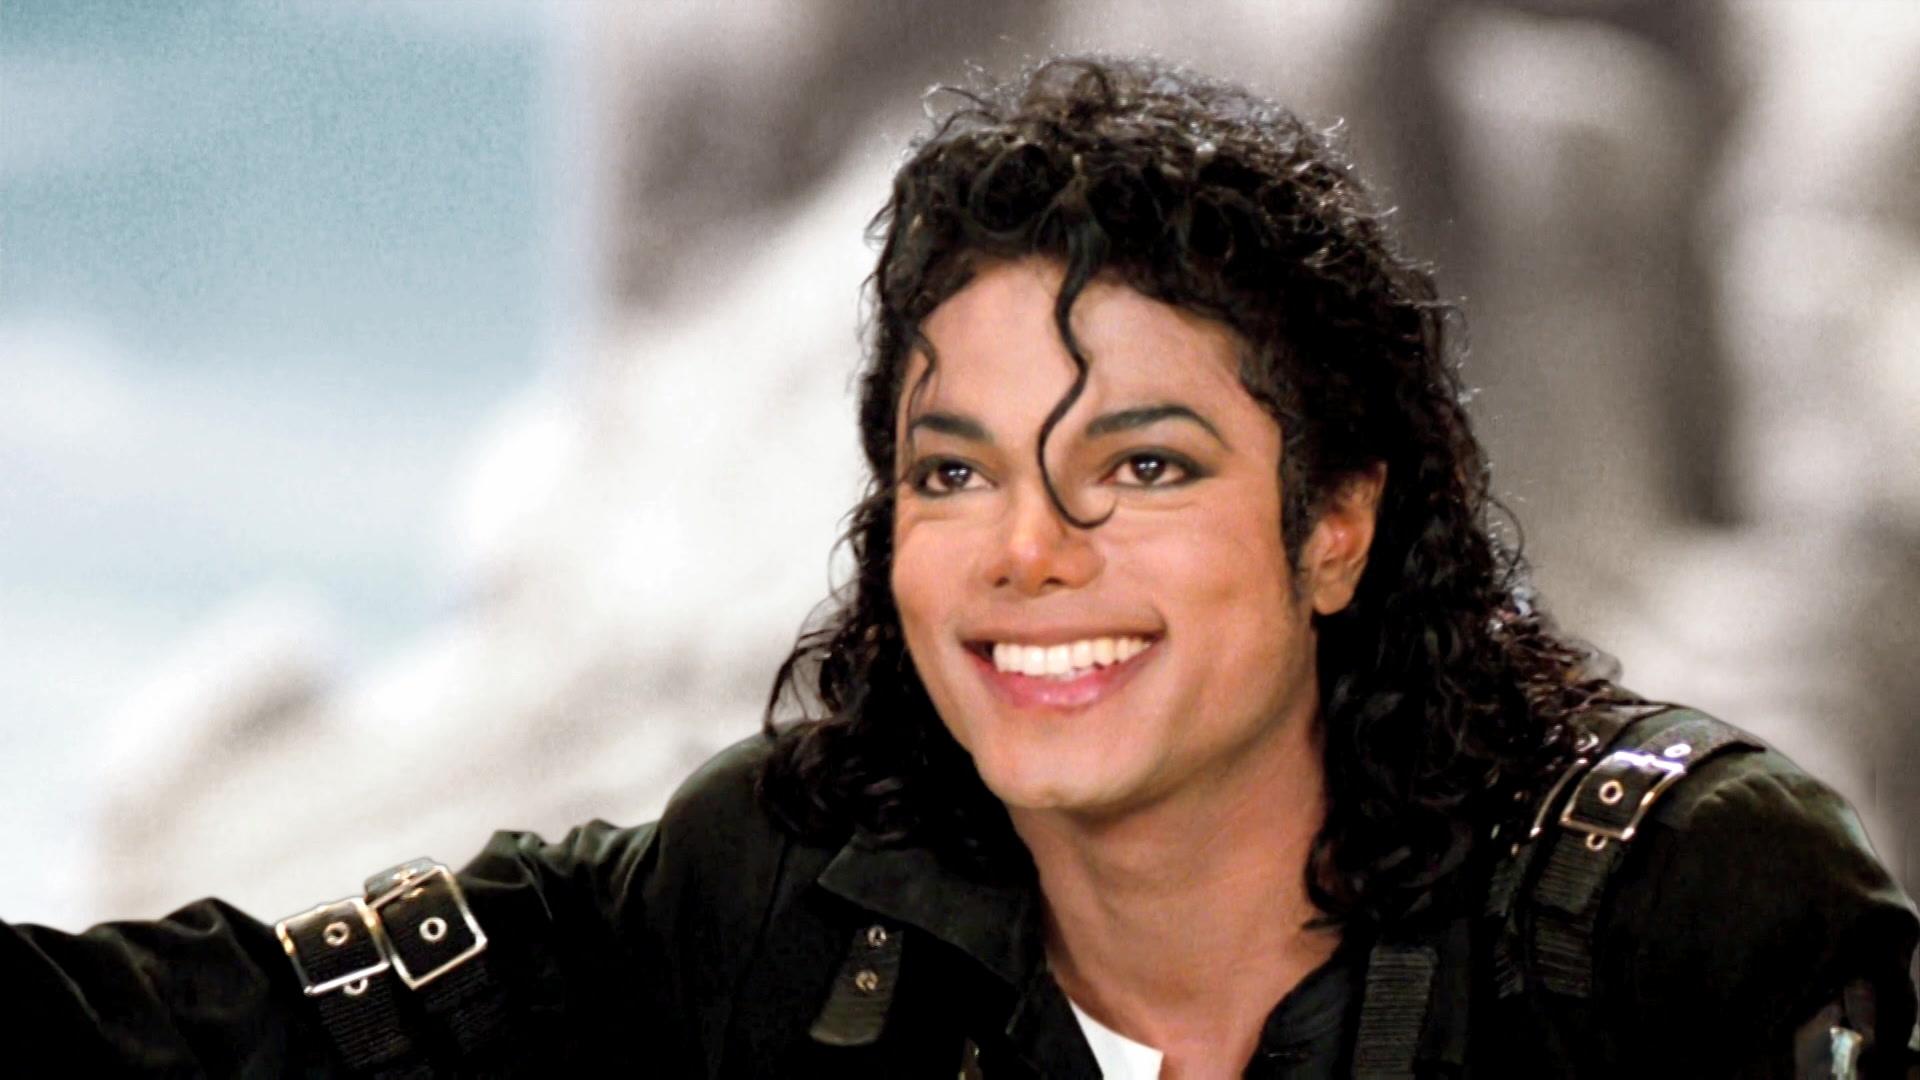 Michael Jackson WP ENDECS